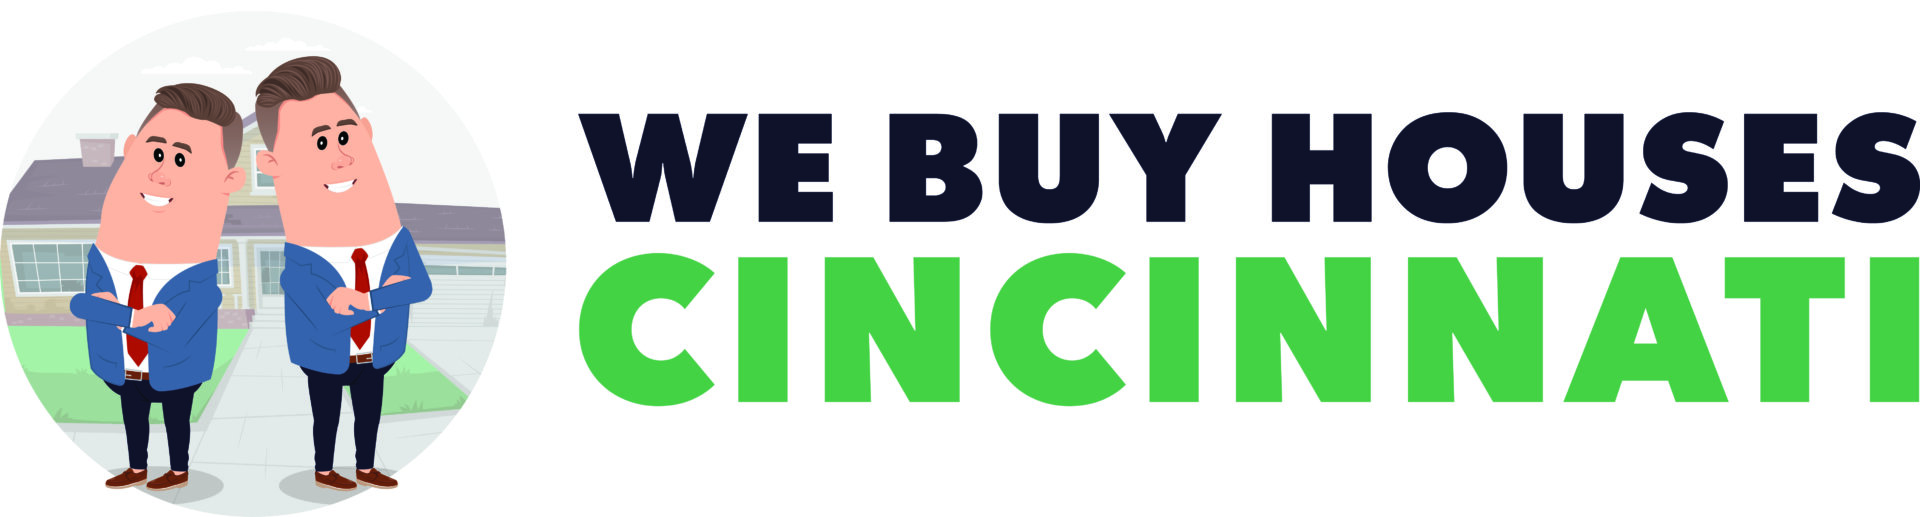 We Buy Houses Cincinnati logo